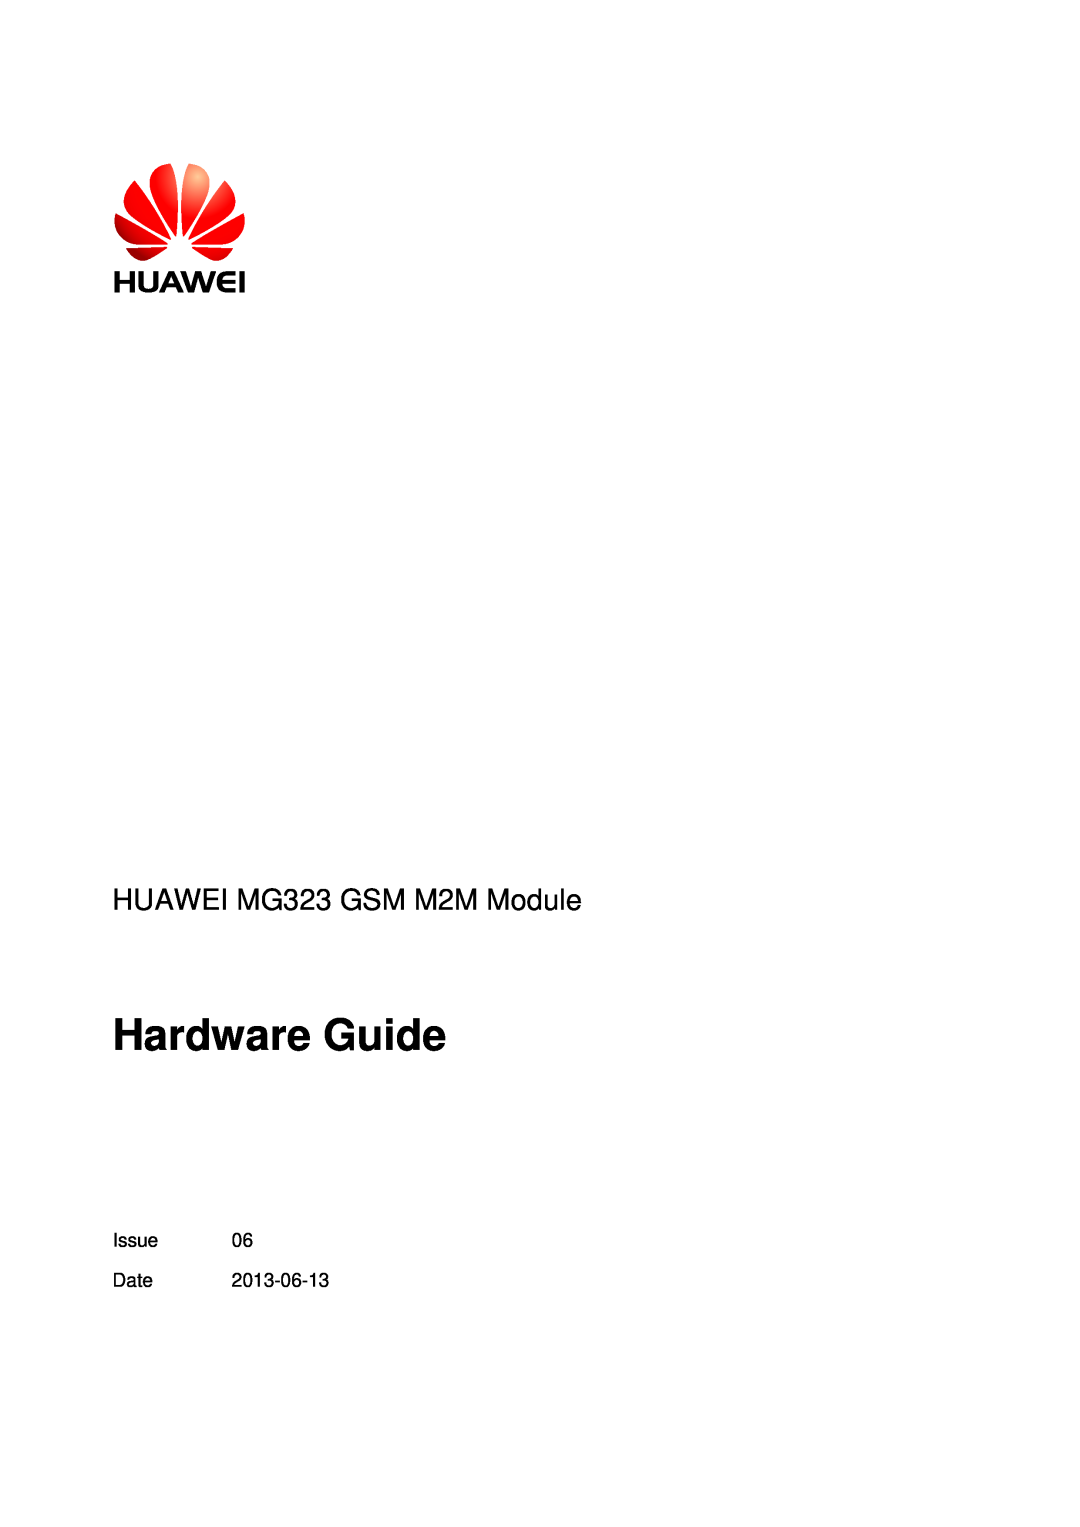 Huawei manual Hardware Guide, HUAWEI MG323 GSM M2M Module 